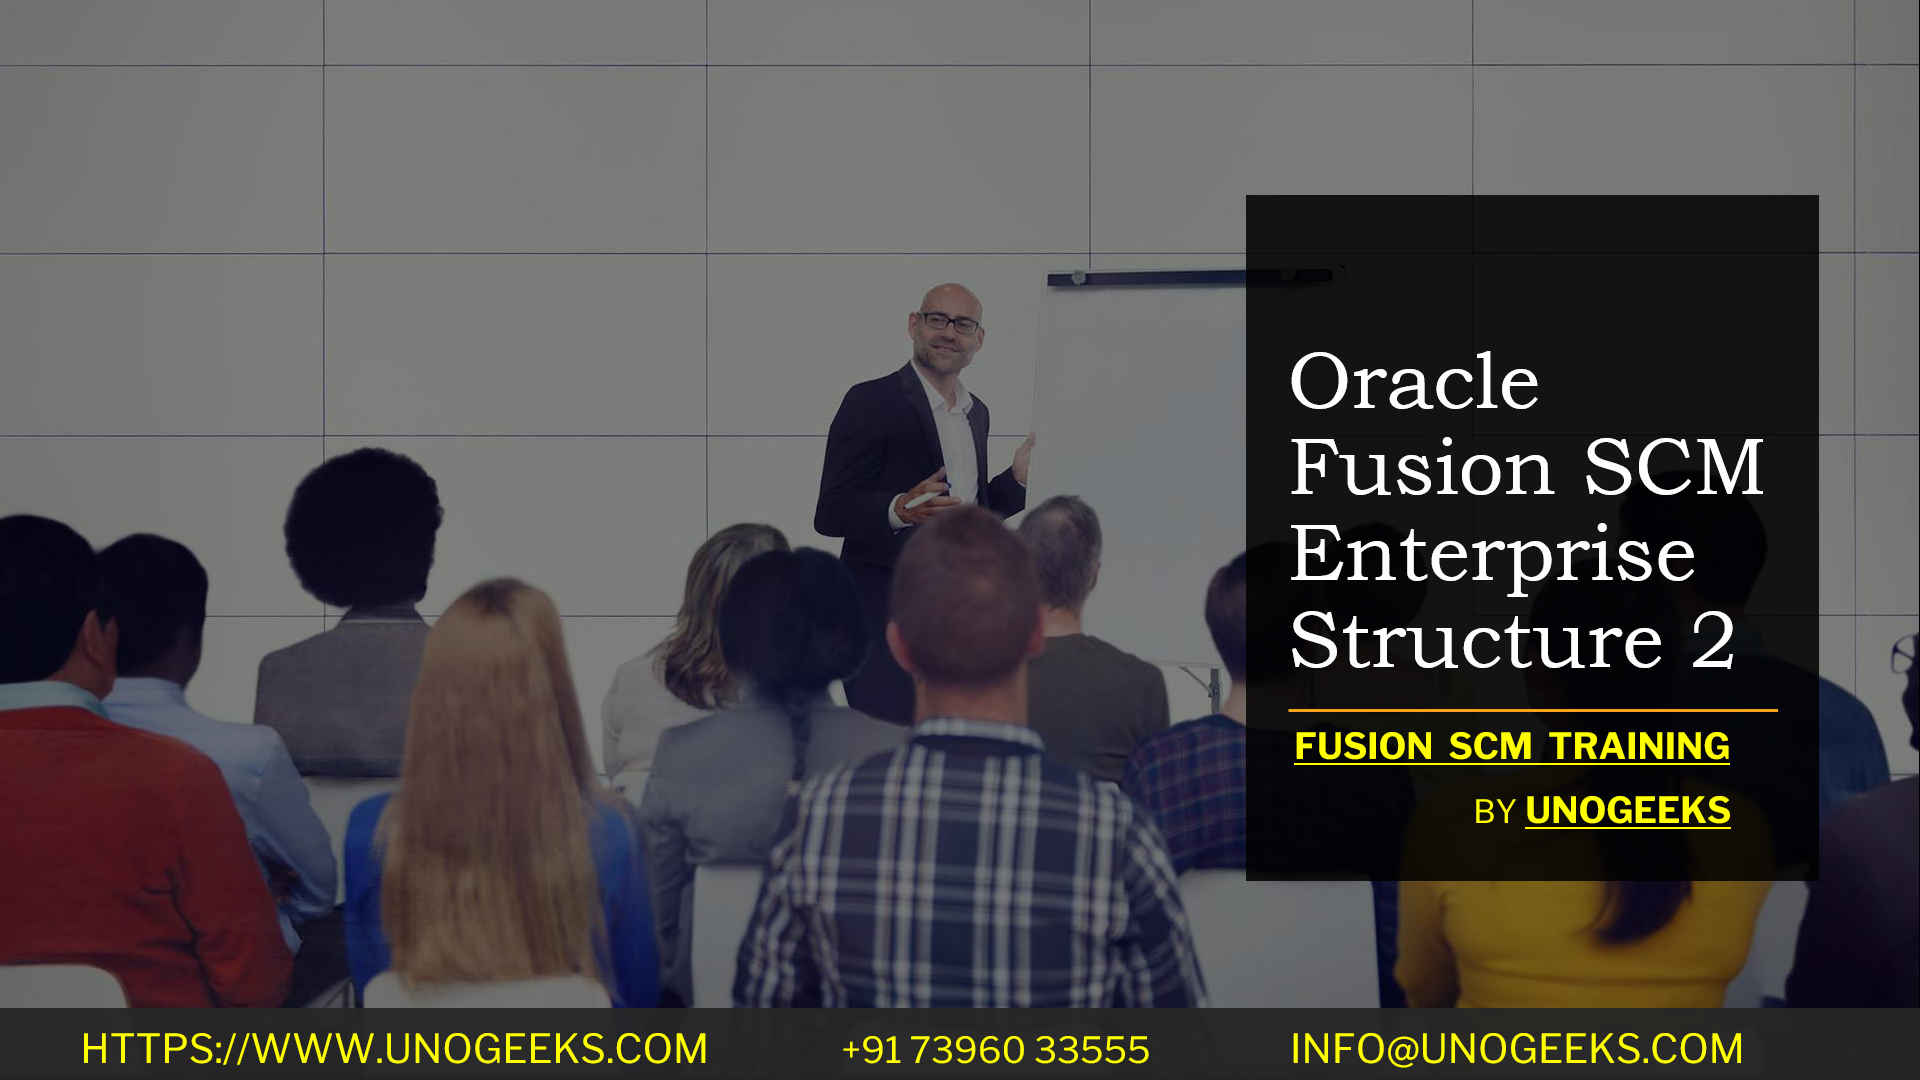 Oracle Fusion SCM Enterprise Structure 2